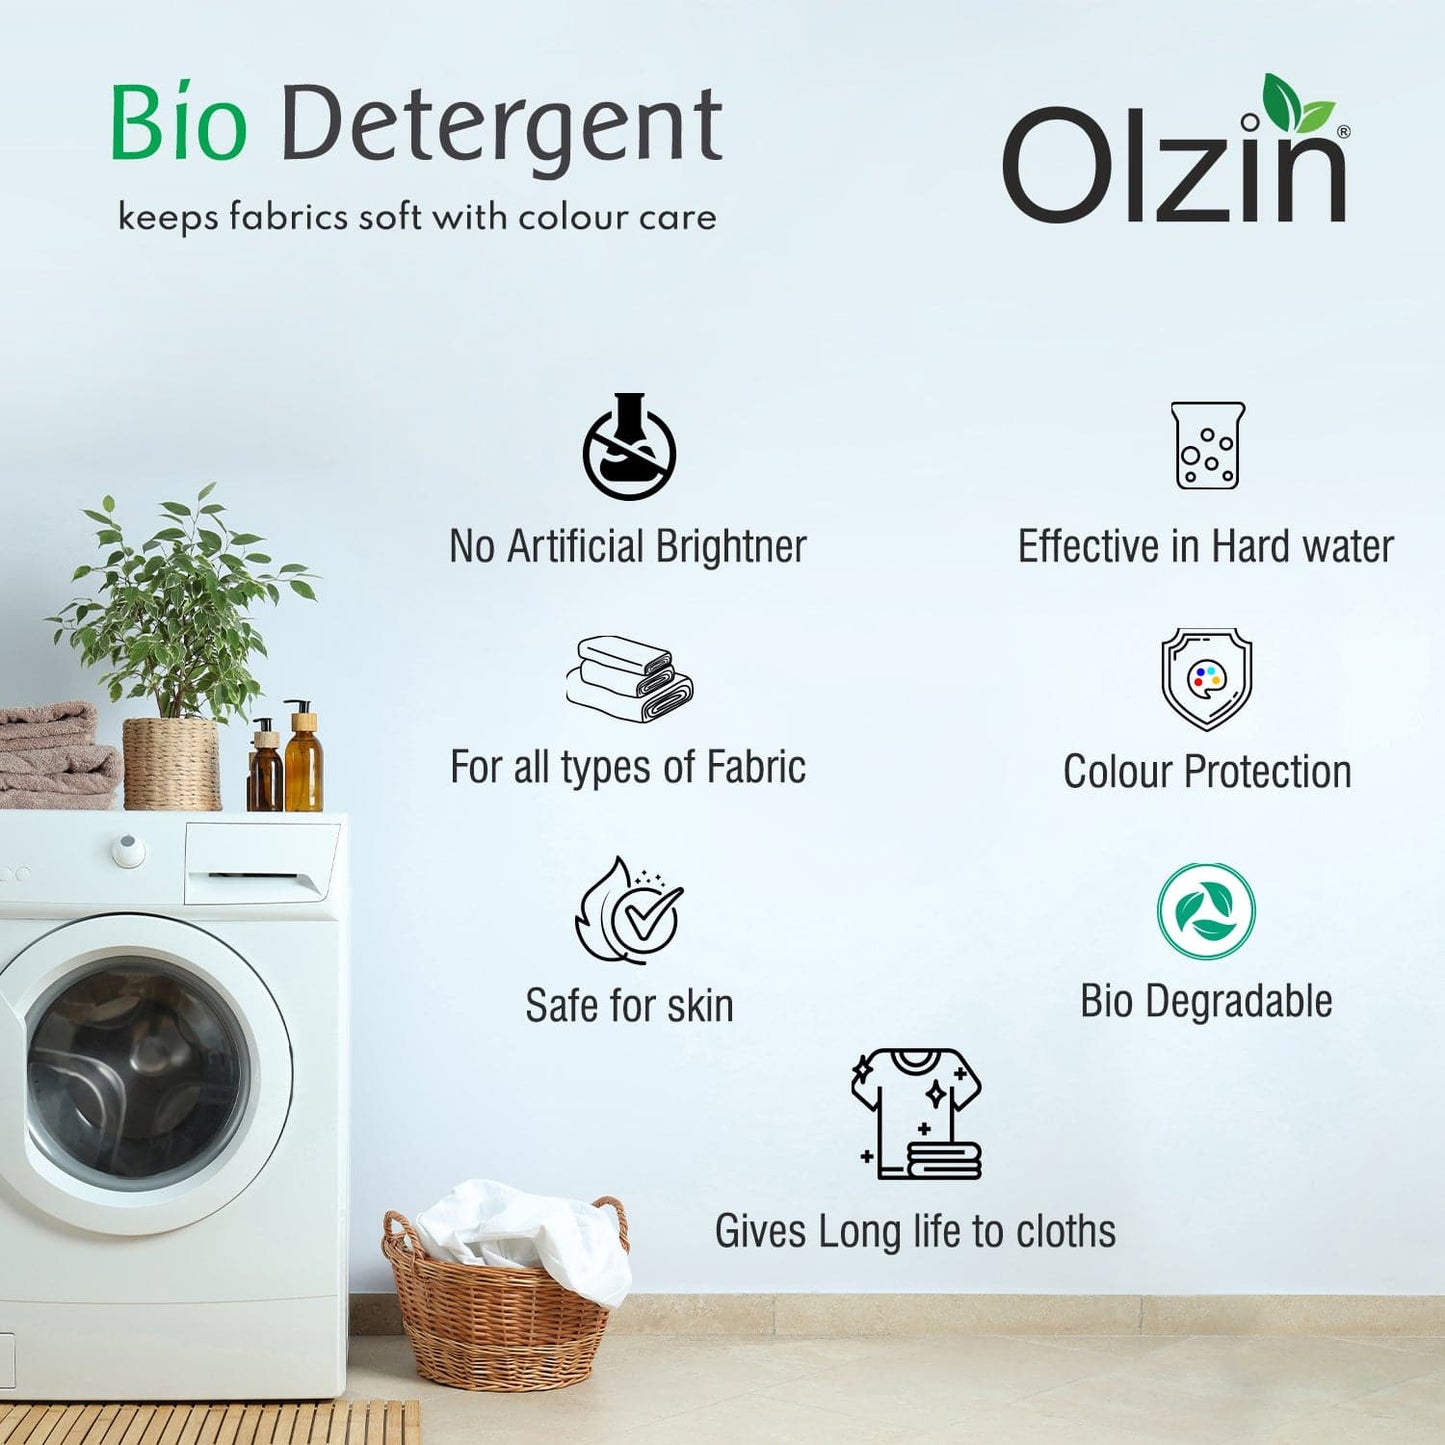 Olzin Bio Detergent